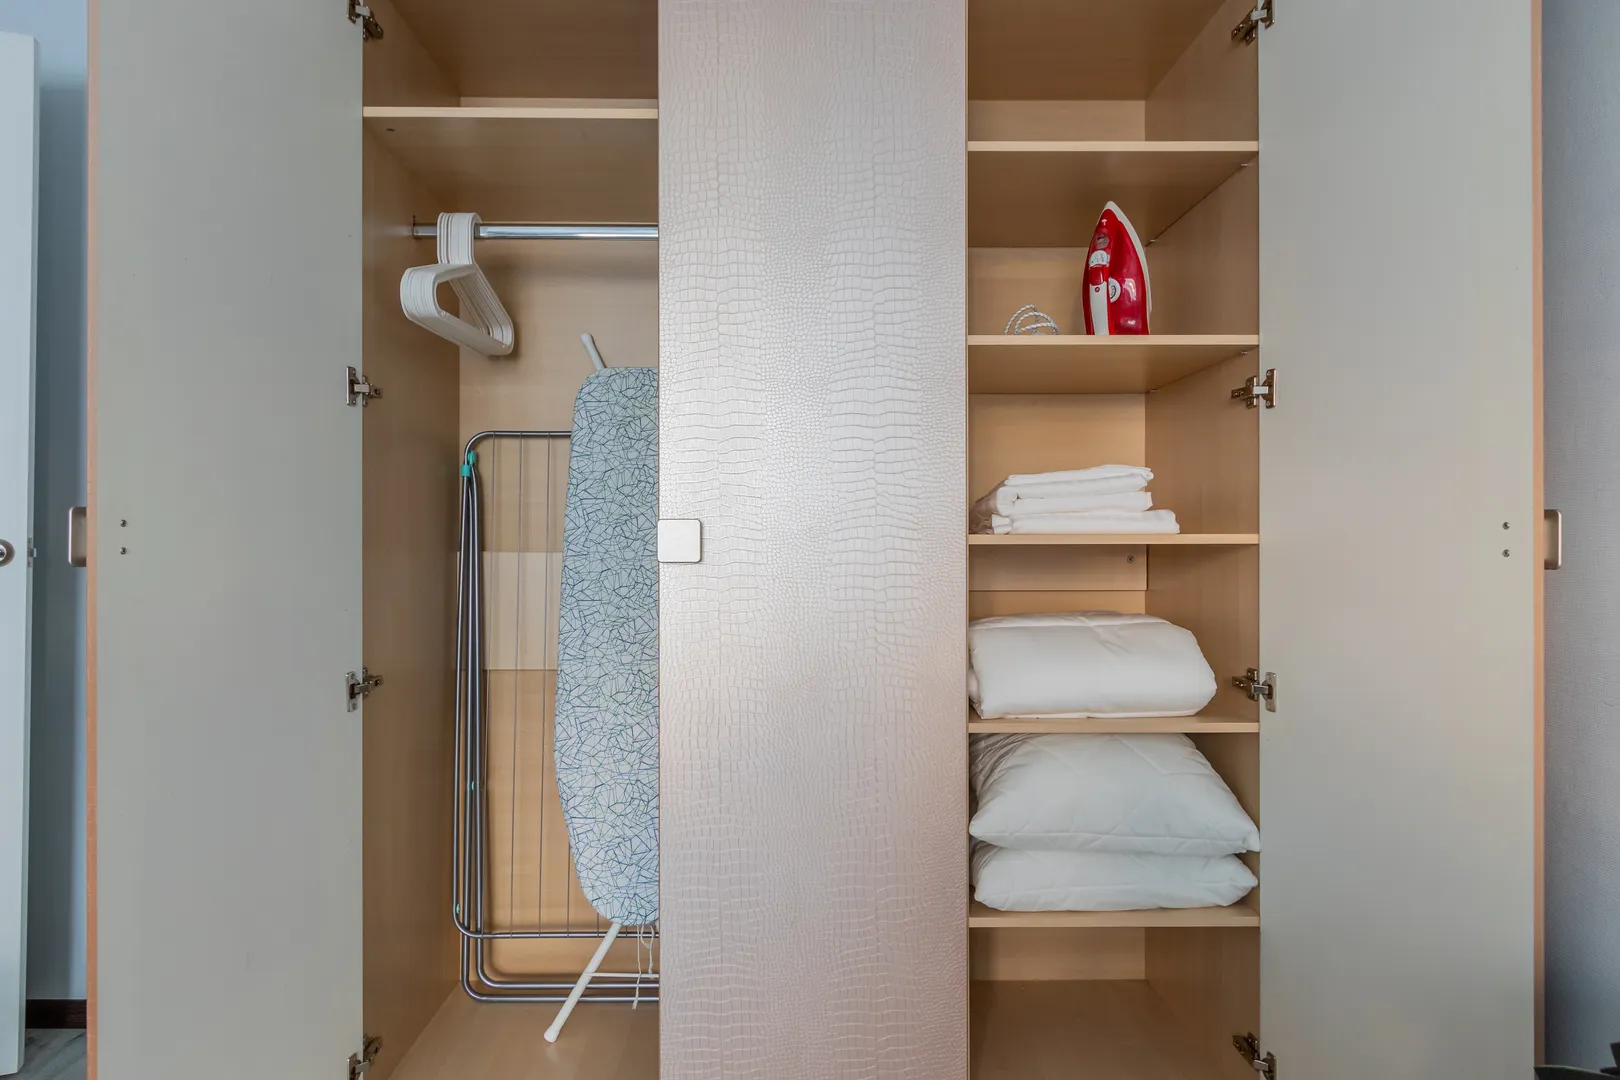 Шкаф с дополнительным постельным бельем и полотенцами, с гладильной доской и утюгом, с сушилкой для белья